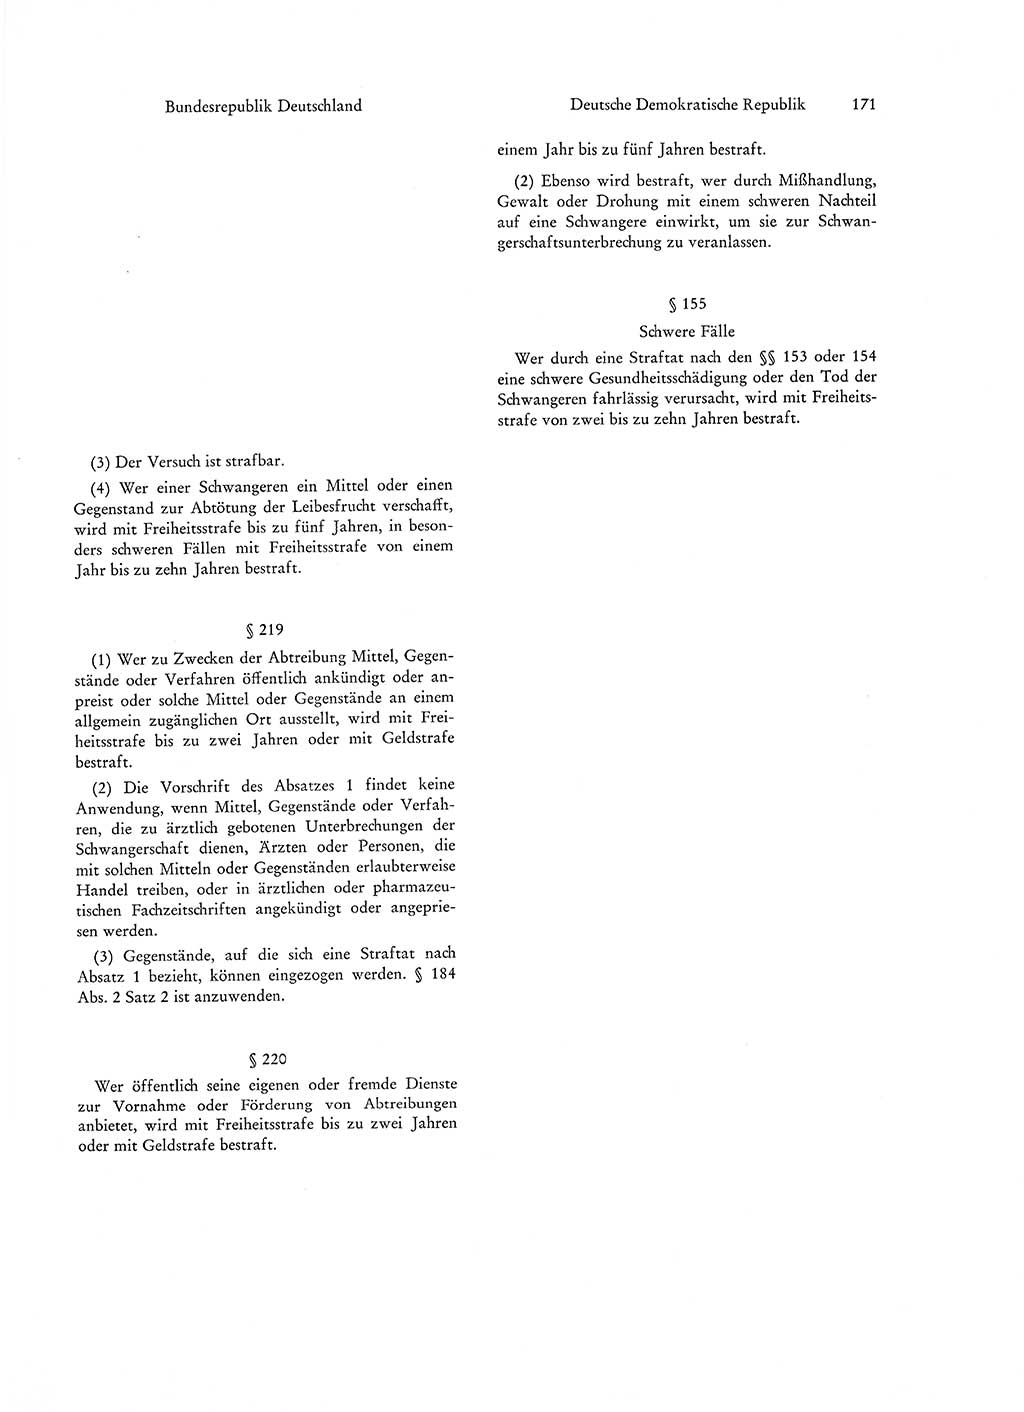 Strafgesetzgebung in Deutschland [Bundesrepublik Deutschland (BRD) und Deutsche Demokratische Republik (DDR)] 1972, Seite 171 (Str.-Ges. Dtl. StGB BRD DDR 1972, S. 171)